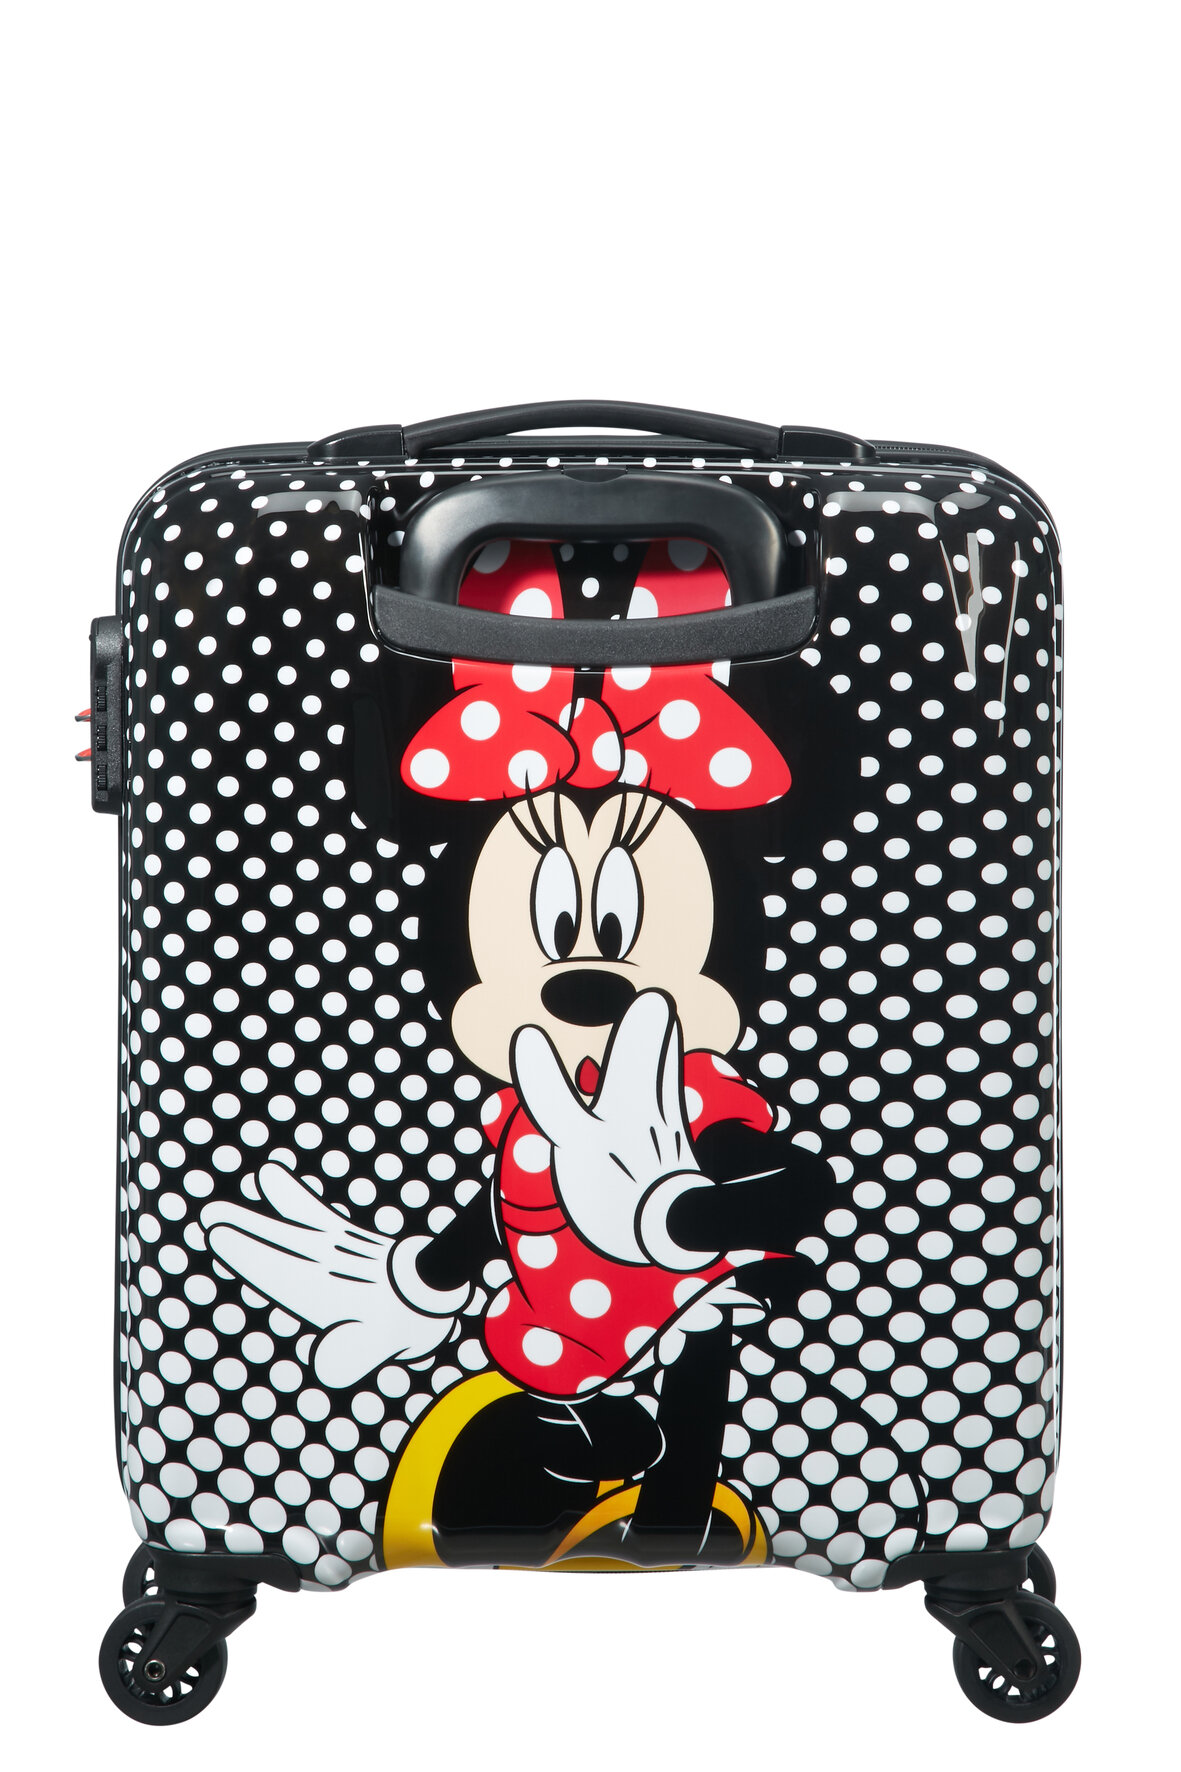 Walizka American Tourister Minie Mouse Disney Legends spin.55/20 widok na walizkę od tyłu